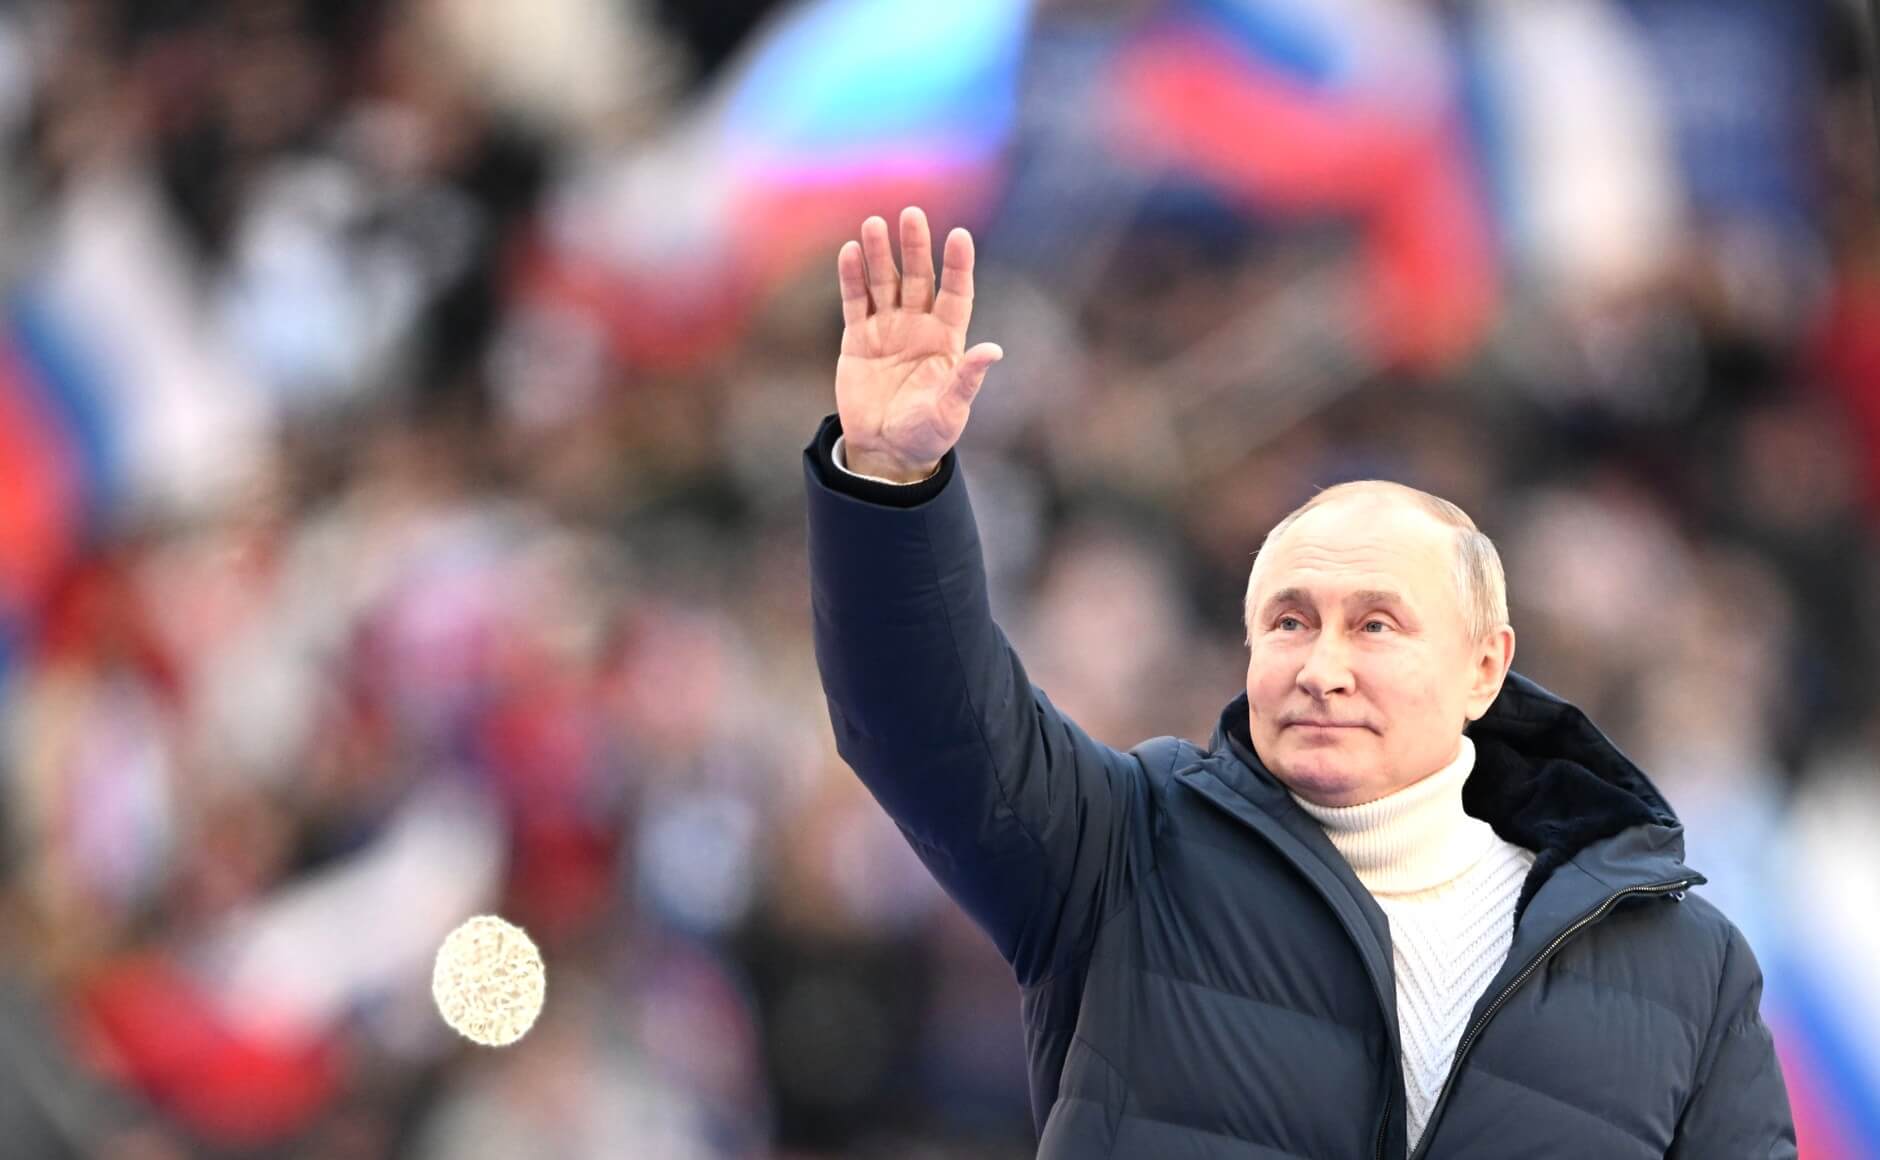 Drost - De Russische president Vladimir Poetin op 17 maart tijdens een toespraak in het Luzhniki stadion in Moskou. Kremlin.ru via Wikimediacommons